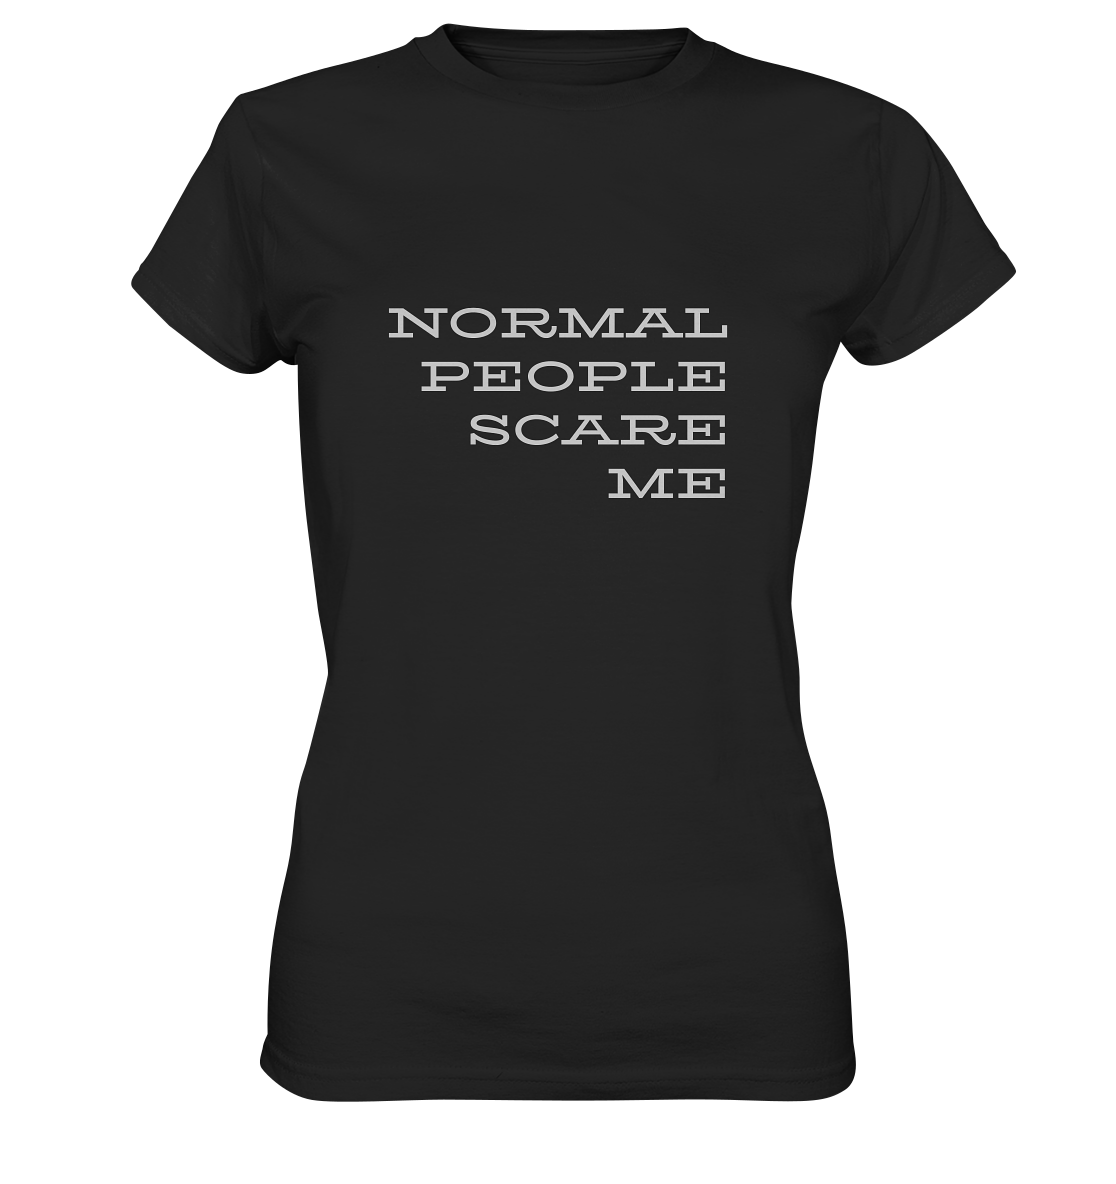 Damen-T-Shirt mit Aufdruck "Normal people scare me", schwarz